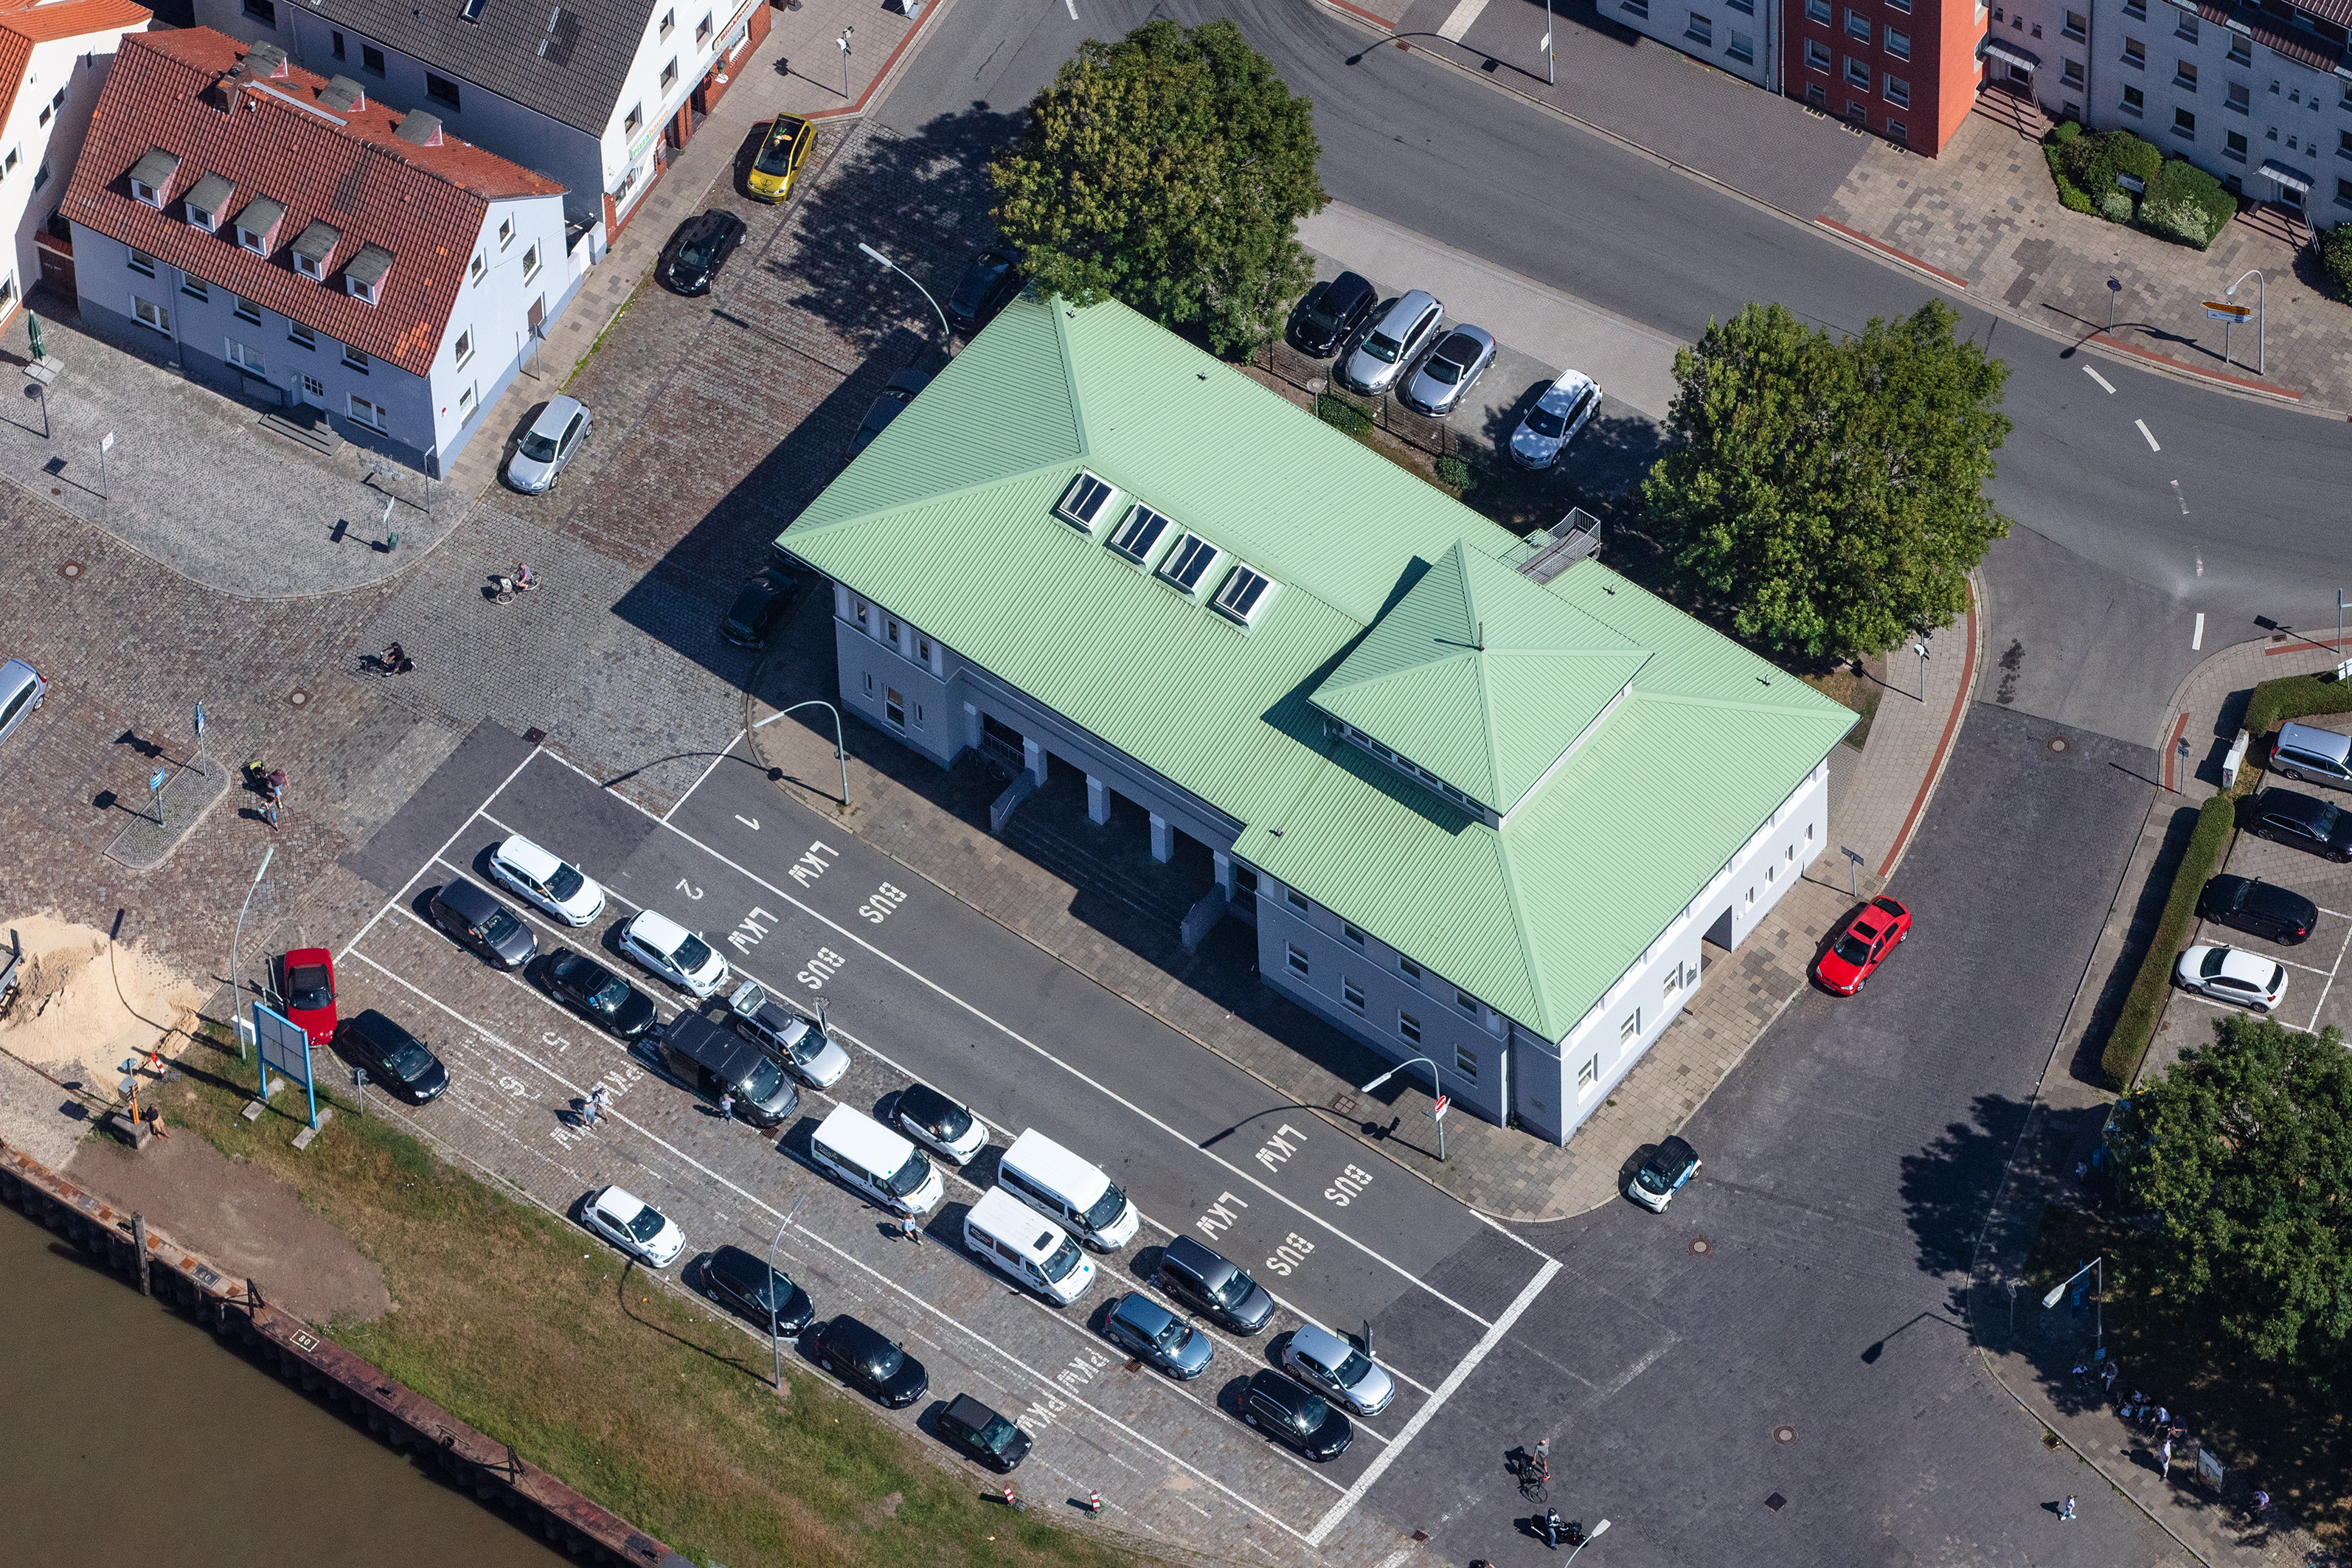 Auf diesem Bild ist das Fährhaus Bremerhaven zu sehen. Es hat ein helles, minzgrünes Dach, das sehr auffällig ist.